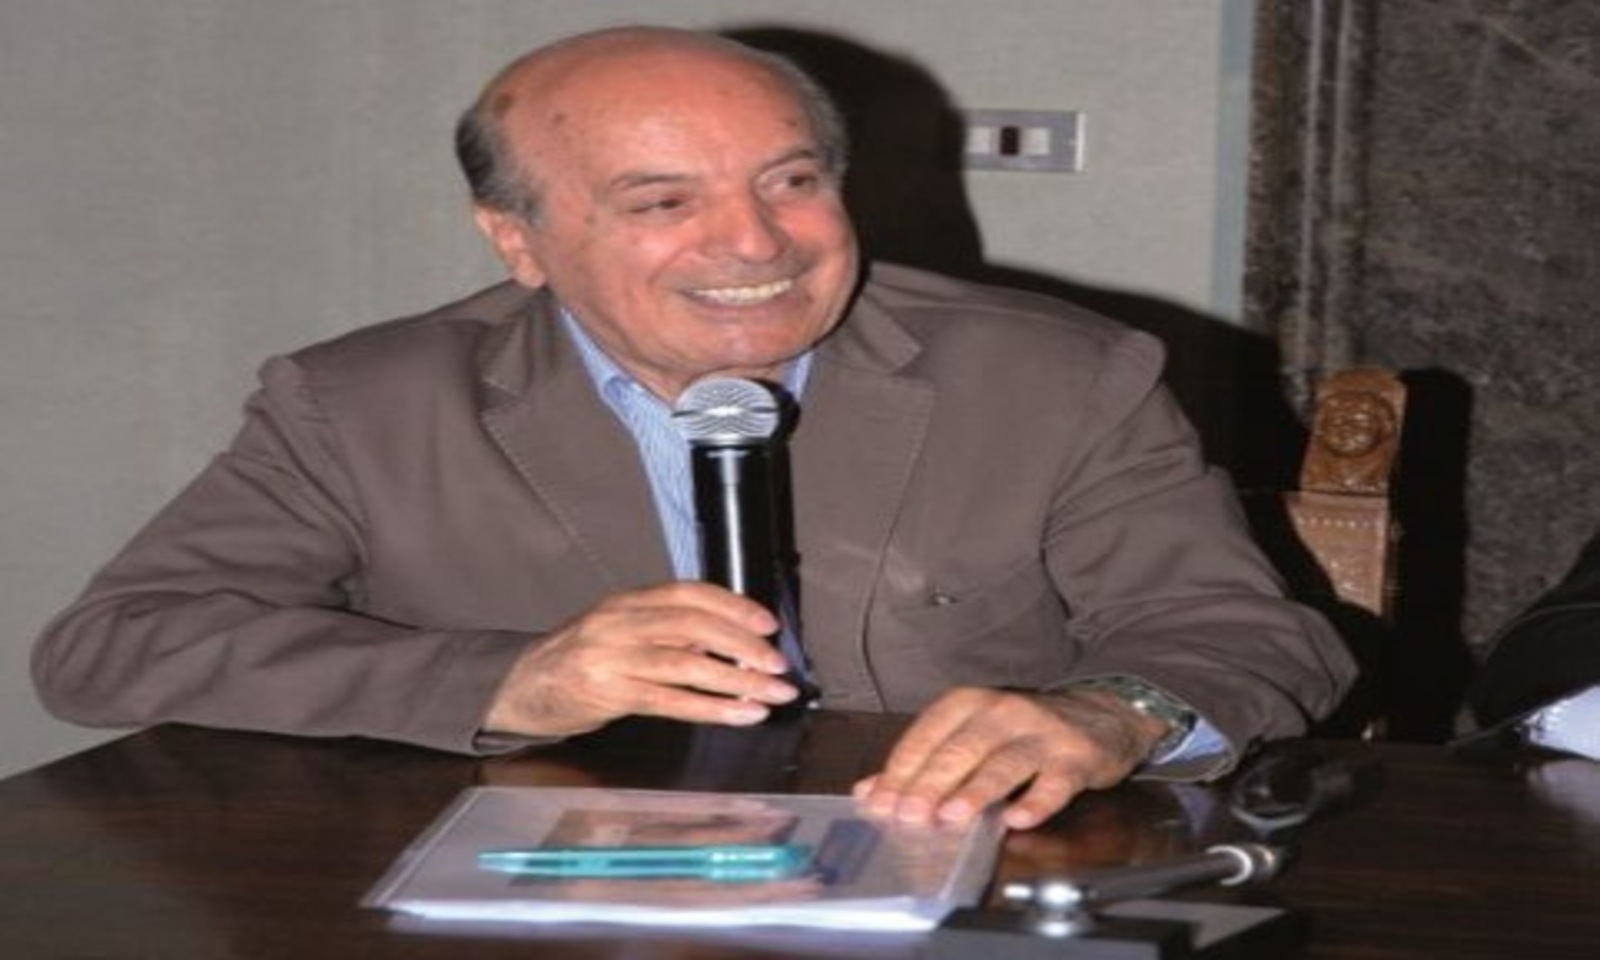 Calogero Alessi, un politico alla ricerca del “bene comune”